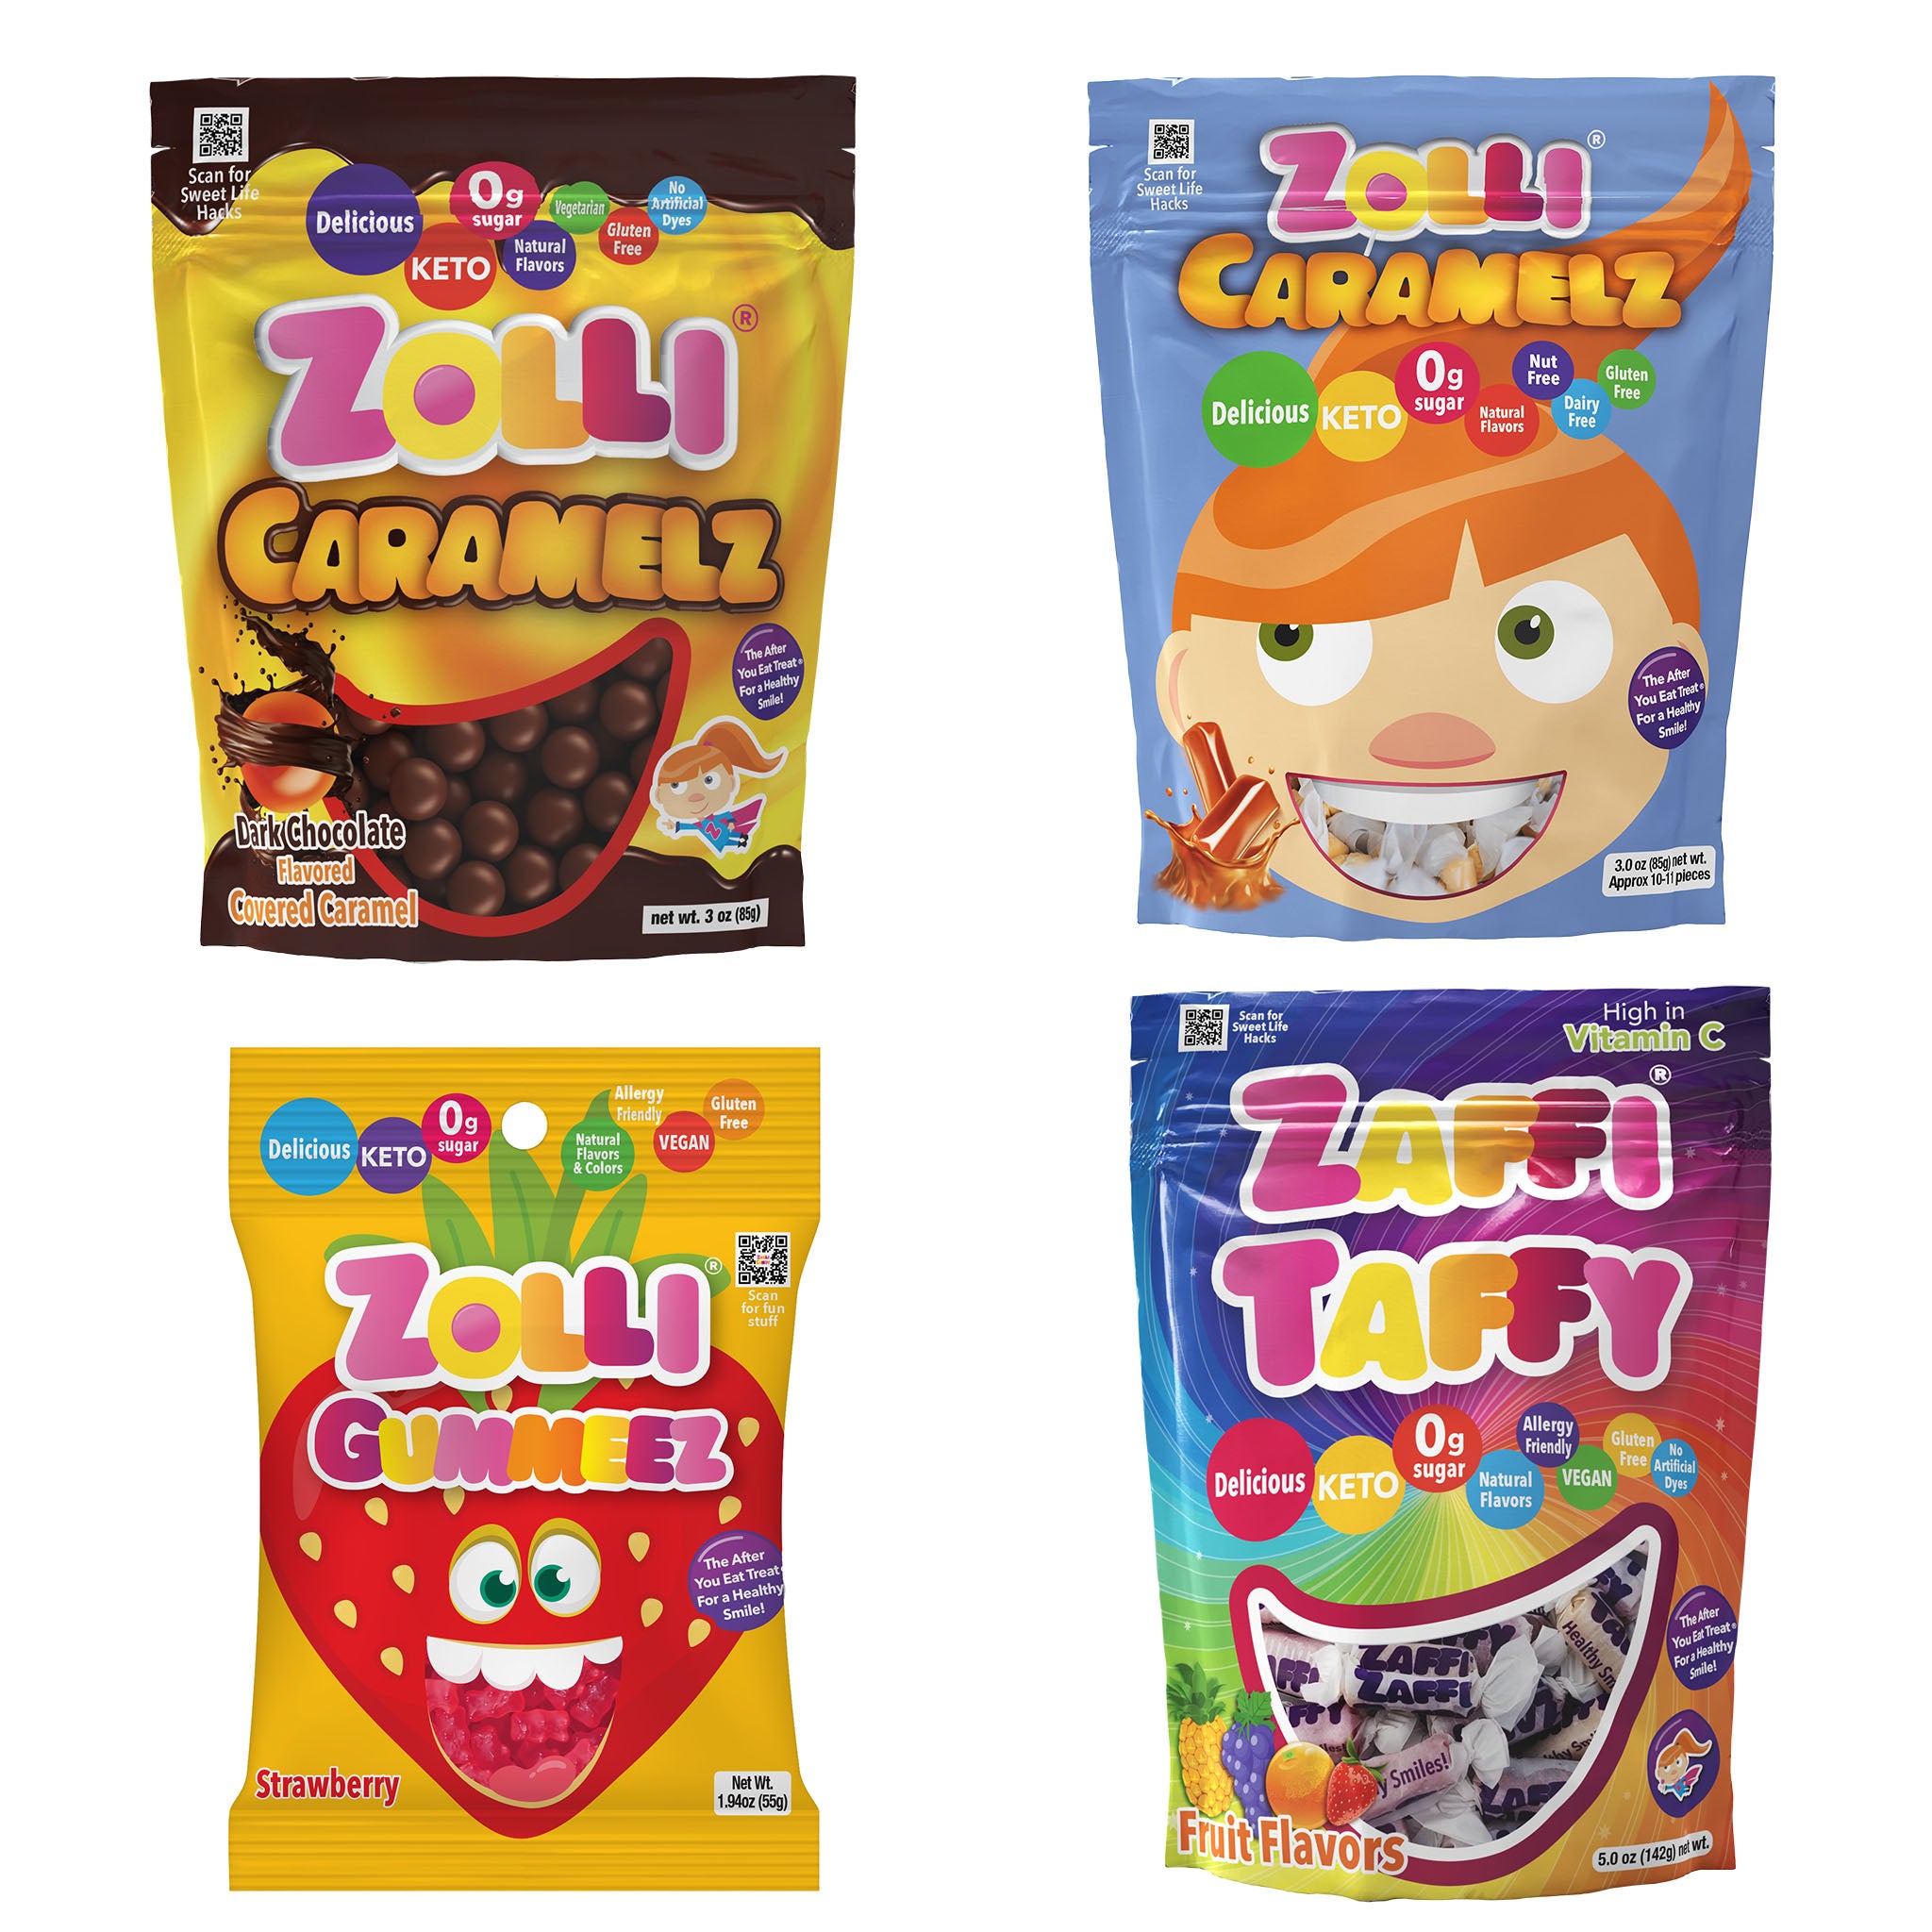 Zolli Candy Chewy Bundle includes Zolli Chocolate covered Caramelz, Zolli Caramelz, Zolli strawberry Gummeez, Zolli Zaffi Taffi.